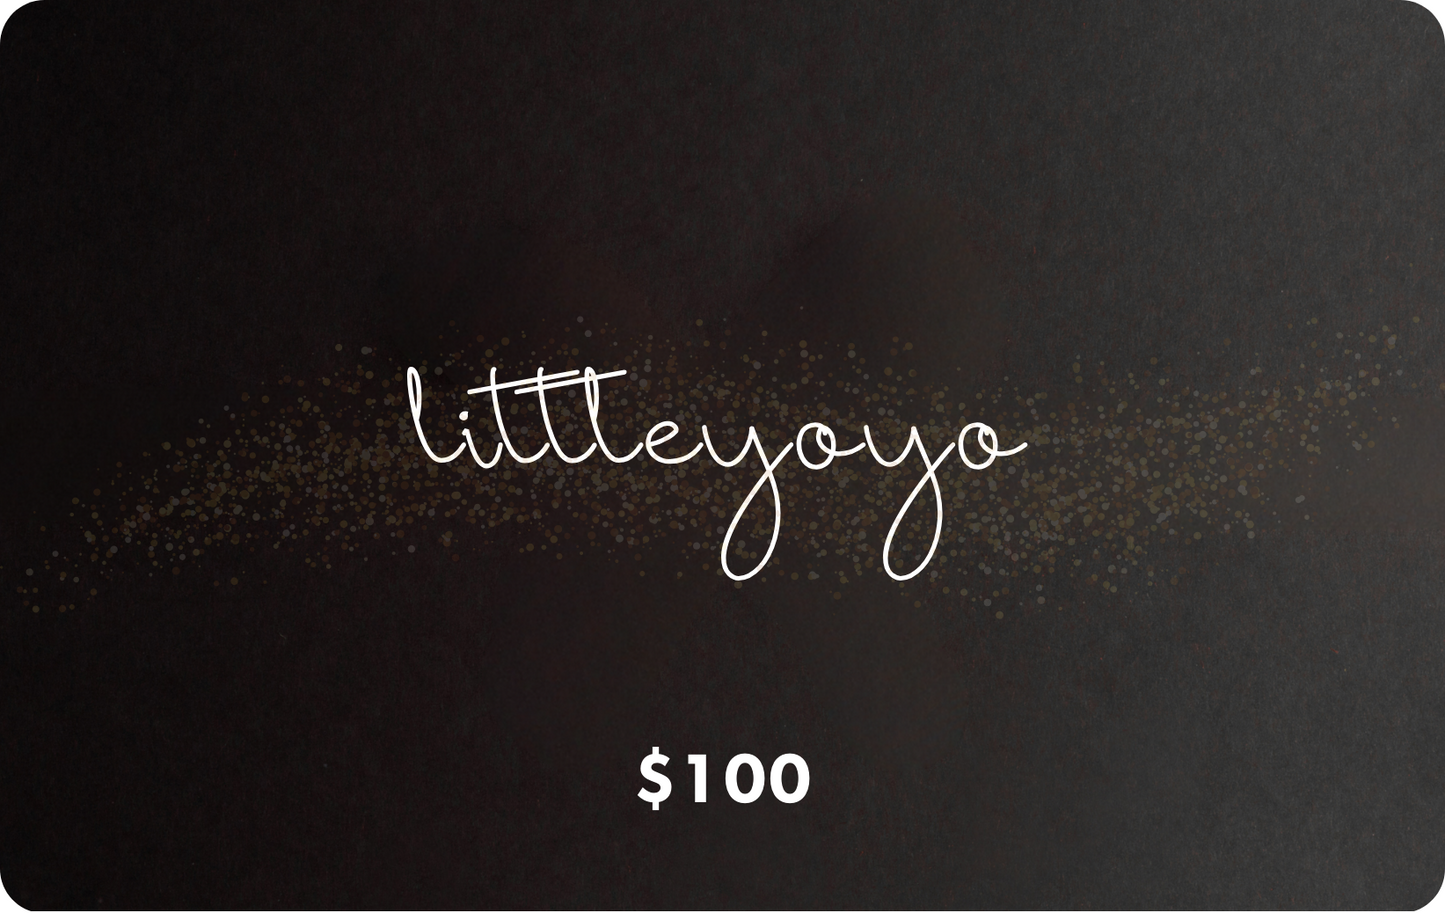 littleyoyo Gift Card